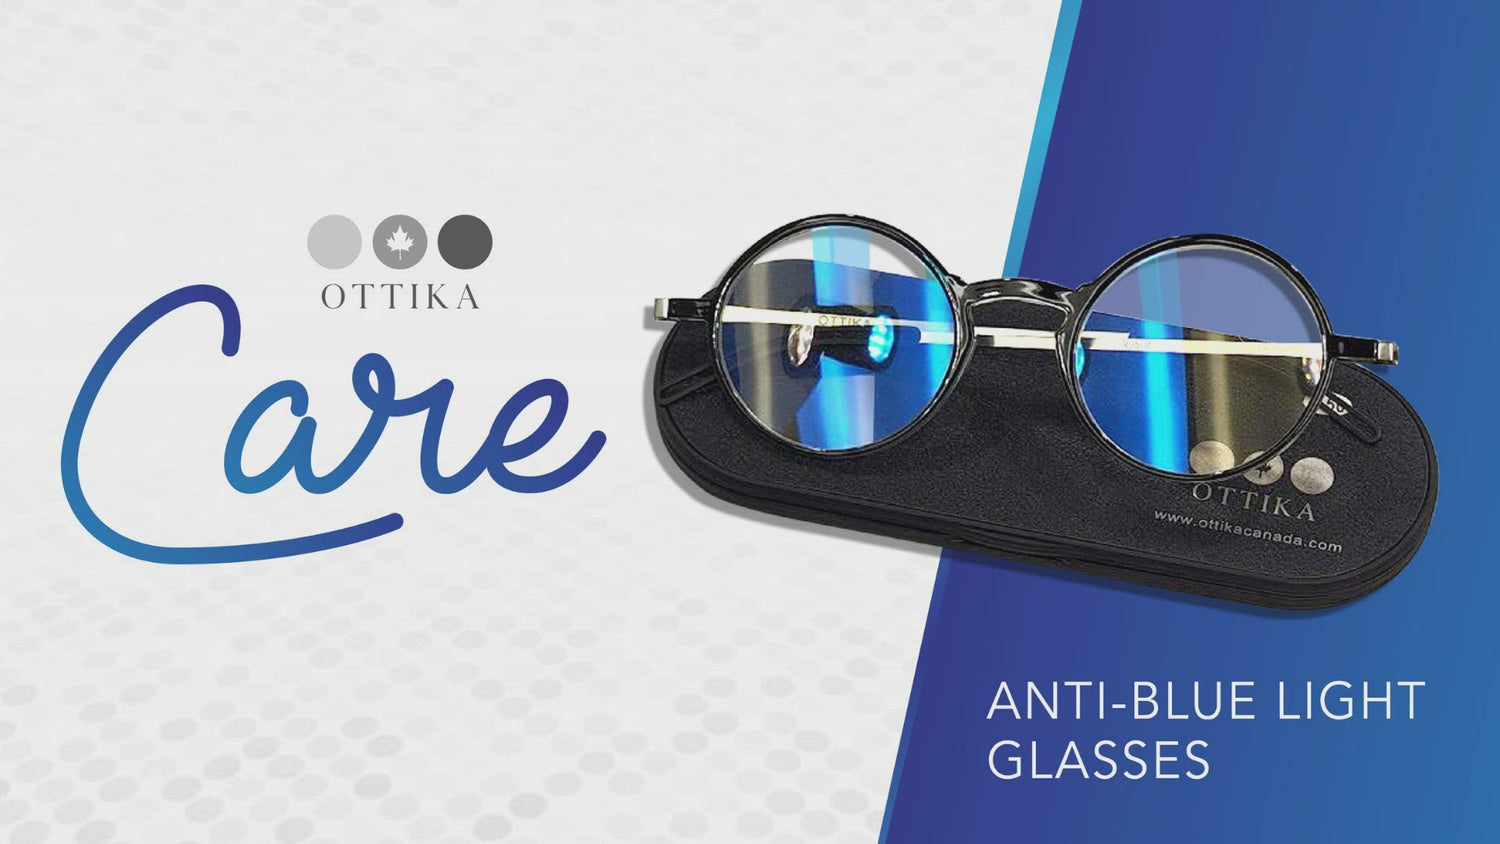 Ottika Care - Blue Light Blocking Glasses | Model N1008